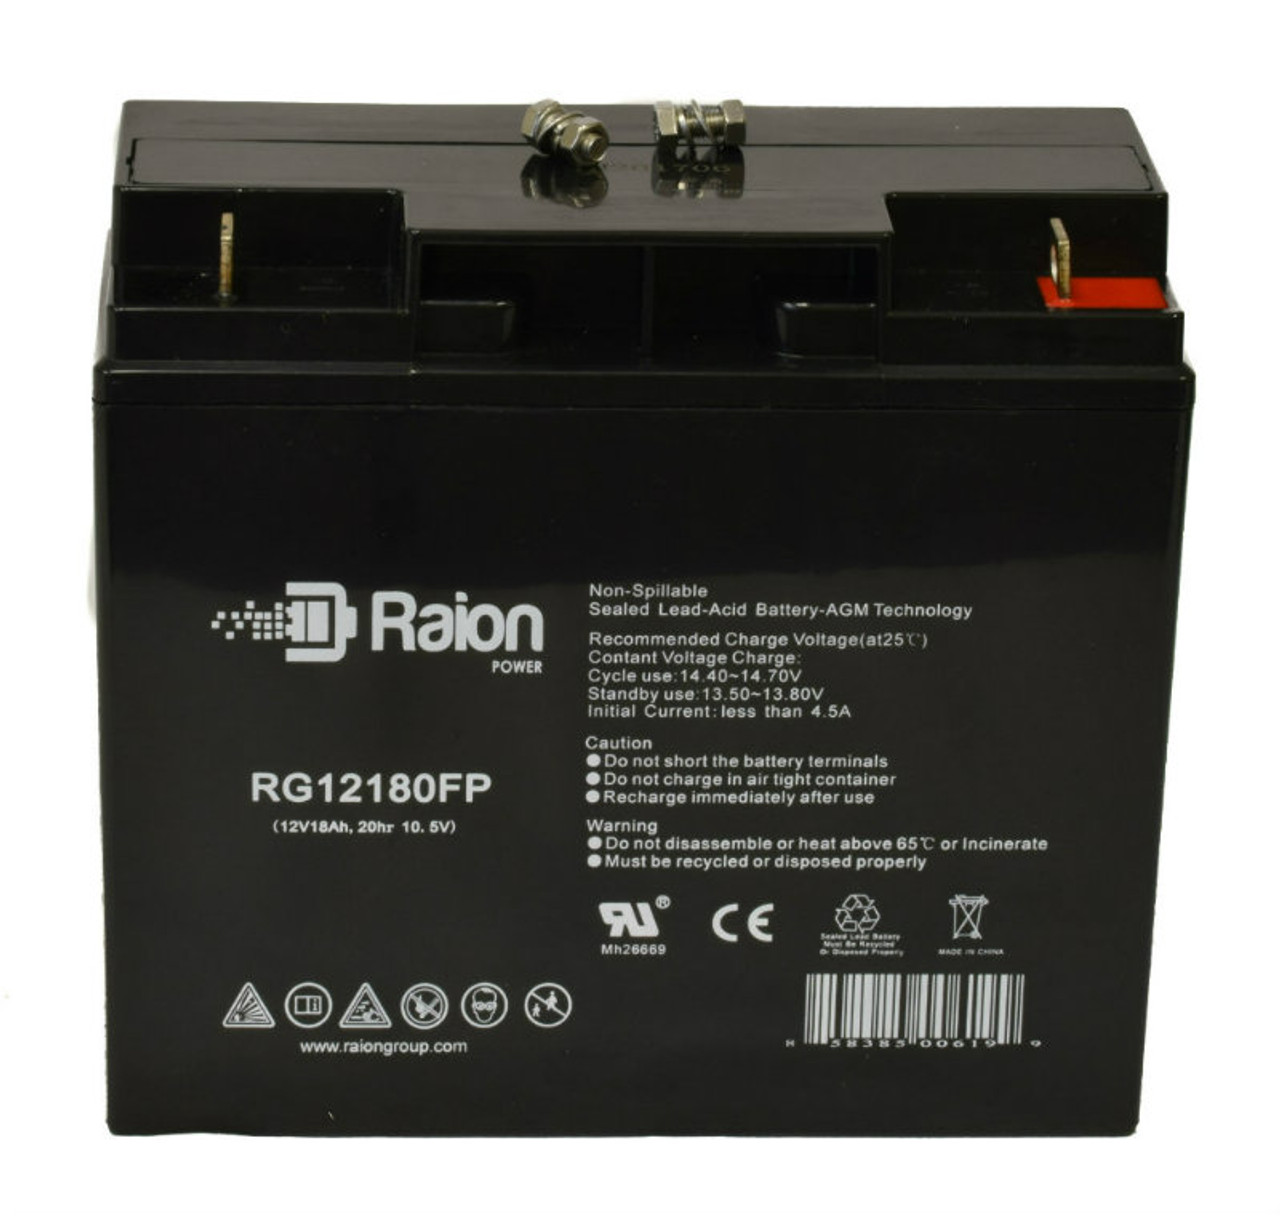 Raion Power RG12180FP 12V 18Ah Lead Acid Battery for Toyo Battery 6FMH18